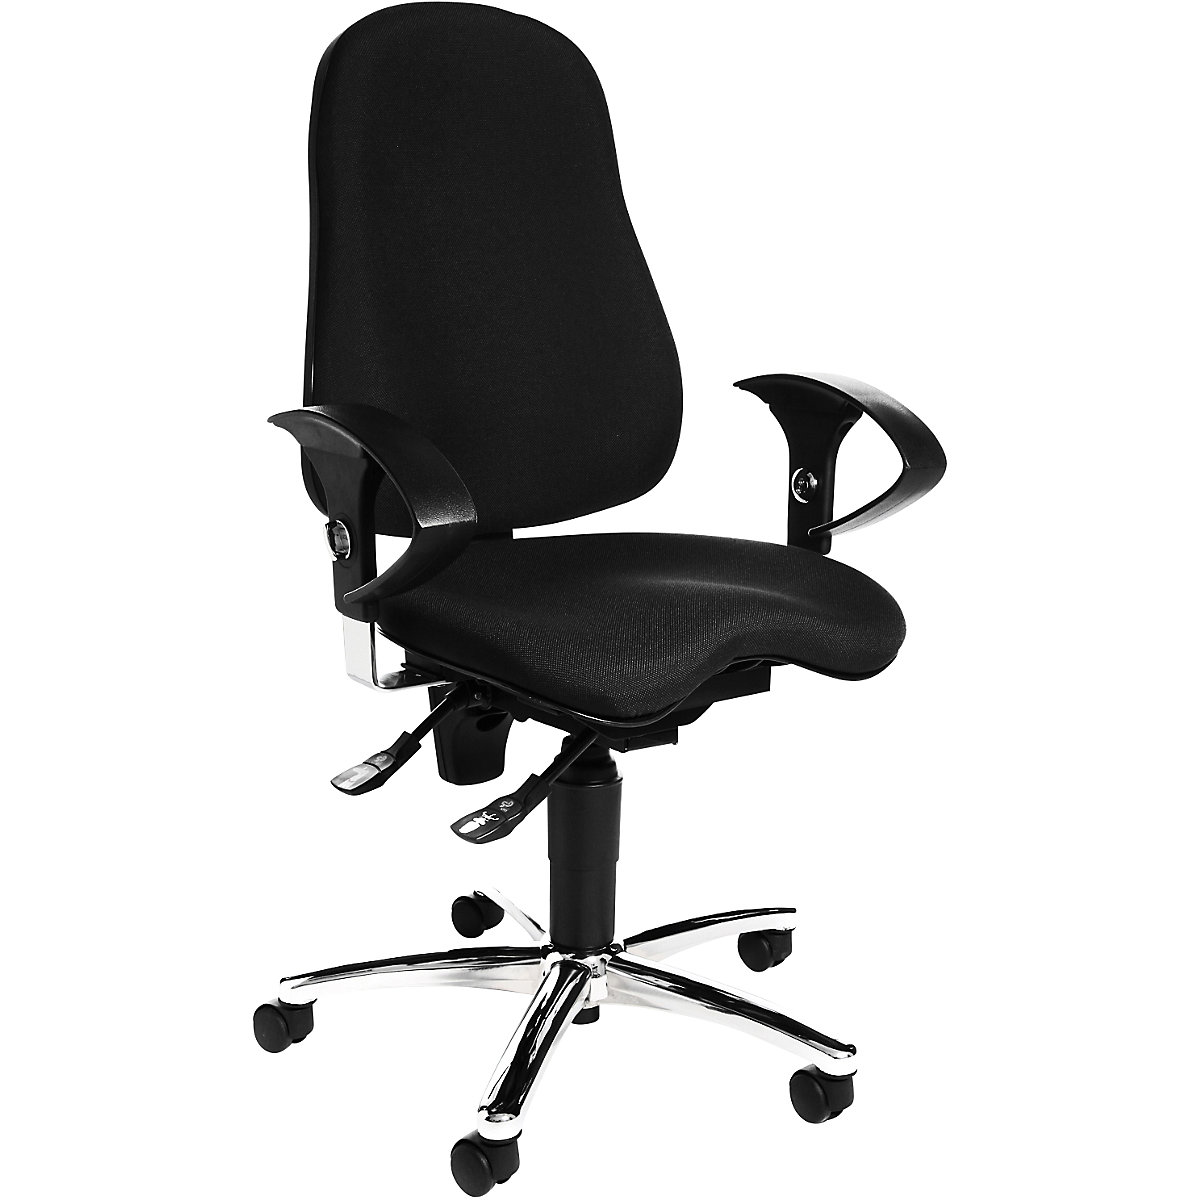 Cadeira giratória de escritório SITNESS 10 – Topstar, com apoios para braços ajustáveis, preto-2